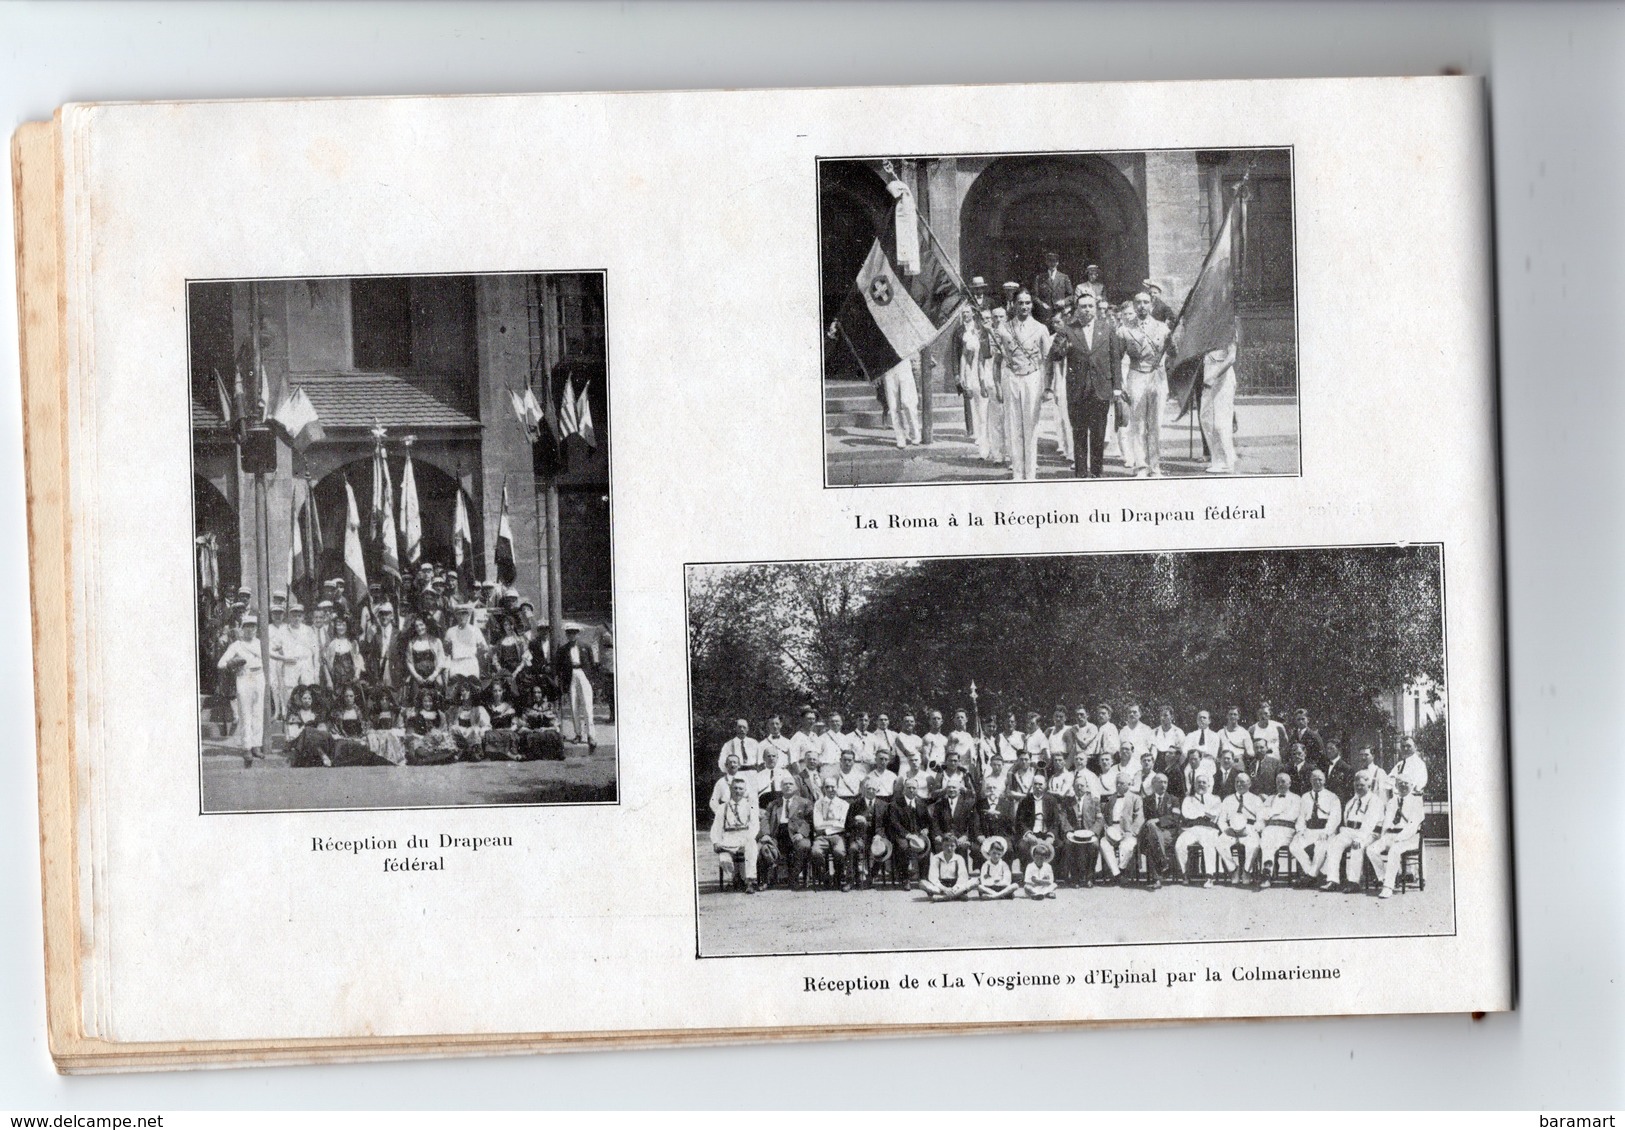 68 Grand concours international de gymnastique d'Alsace COLMAR 13 14 15 JUILLET 1928 Livret 38 PAGES + 1 CARTE POSTALE